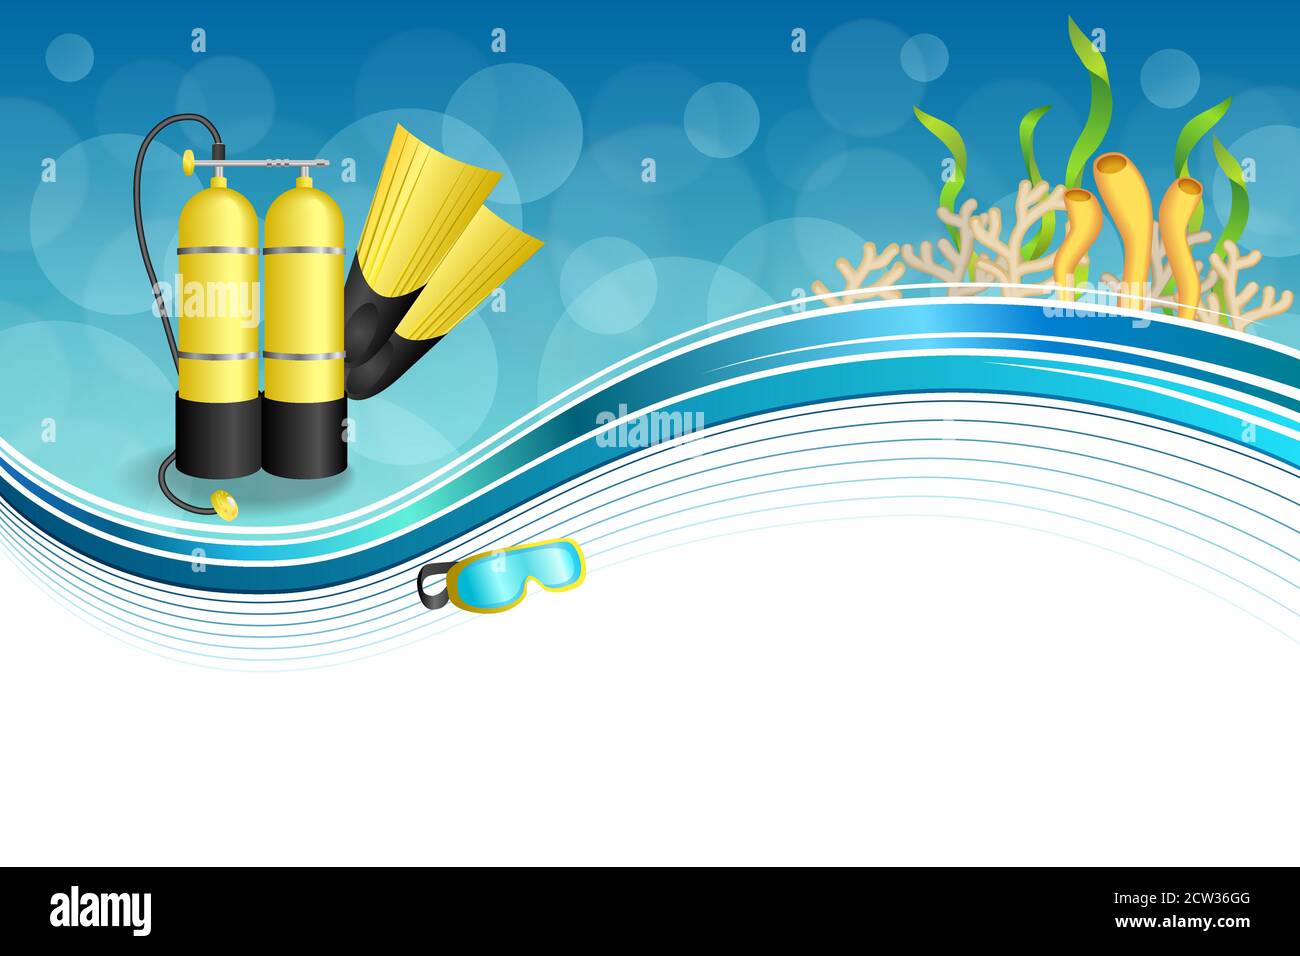 Hintergrund abstrakt blau Tauchen Sport gelb aqualung Flossen Maske Rahmen Illustrationsvektor Stock Vektor